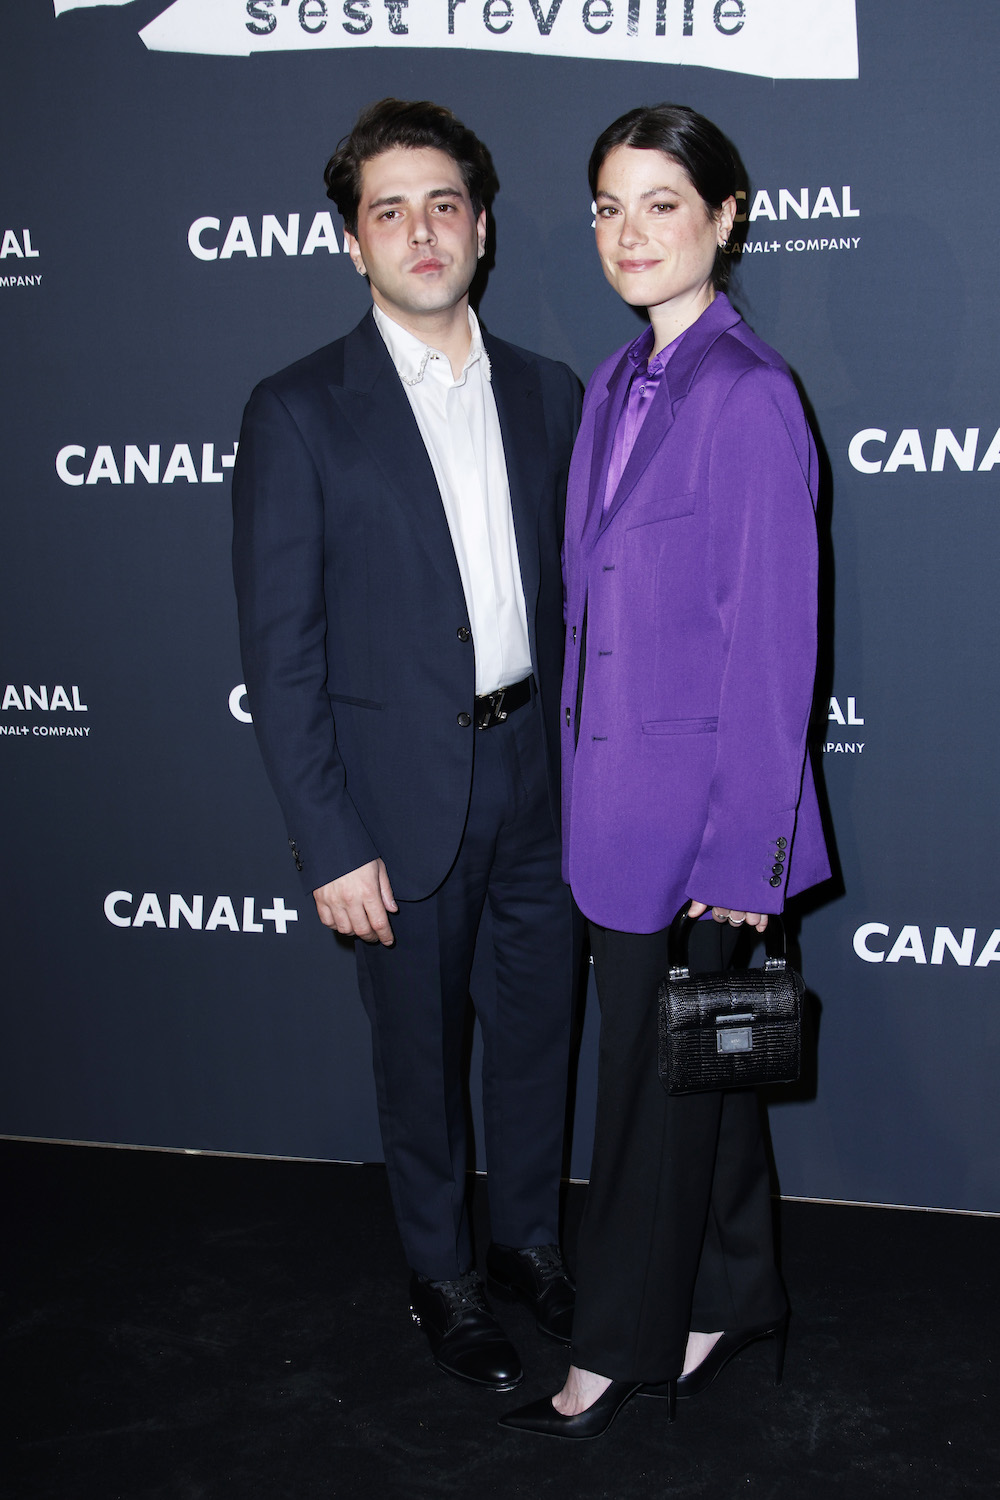 PARIS, FRANCE - JANUARY 17: Xavier Dolan and Julianne Côté attend the "La Nuit Ou Laurier Gaudreault S'Est Reveille" Premiere at La Cinematheque on January 17, 2023 in Paris, France. (Photo by Julien Hekimian/Getty Images)